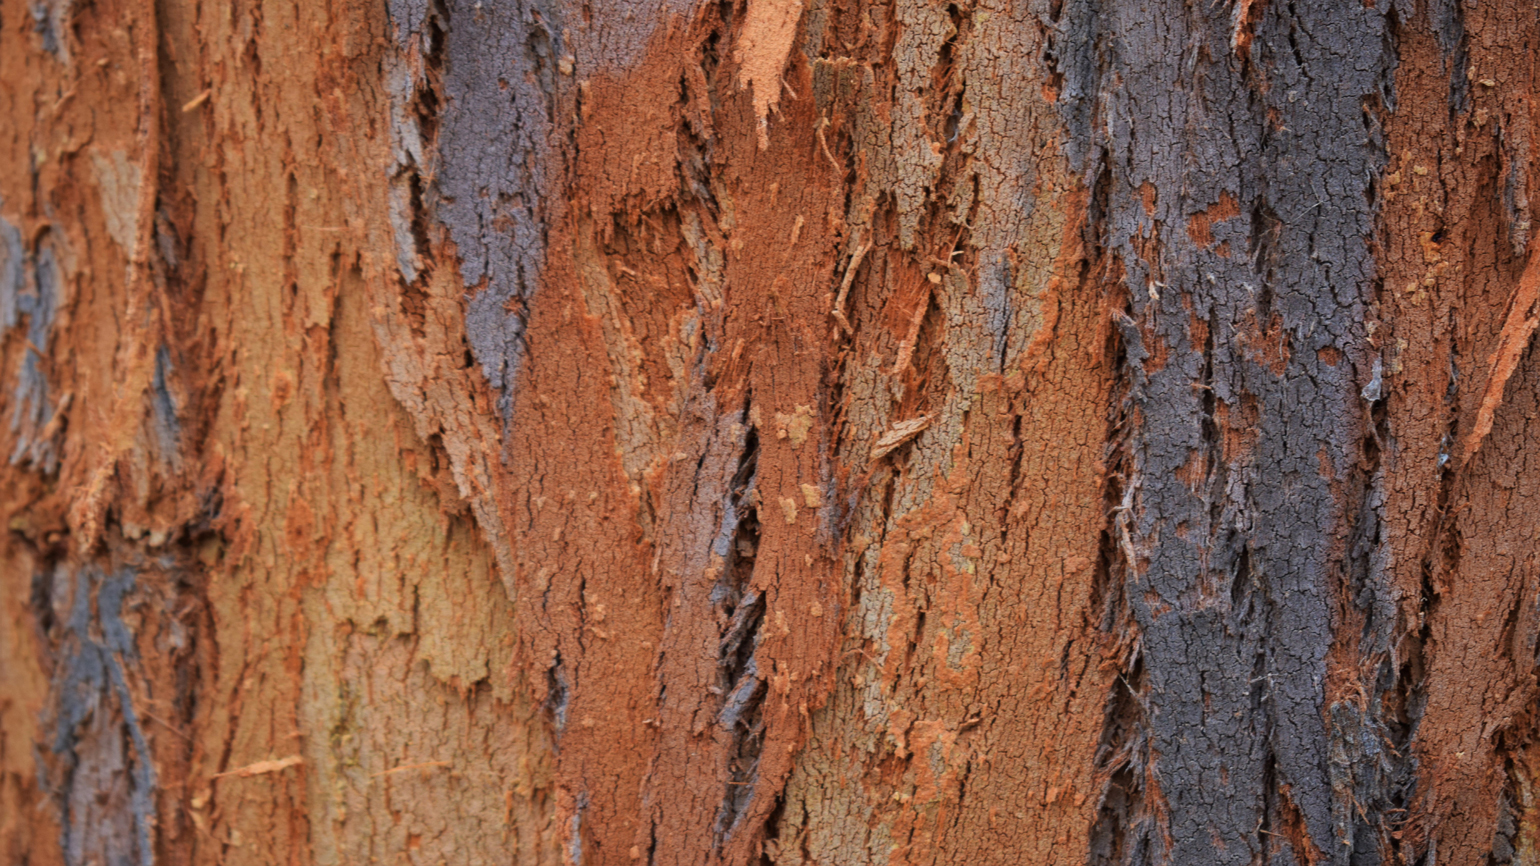 Nothofagus bark in Coates wood 